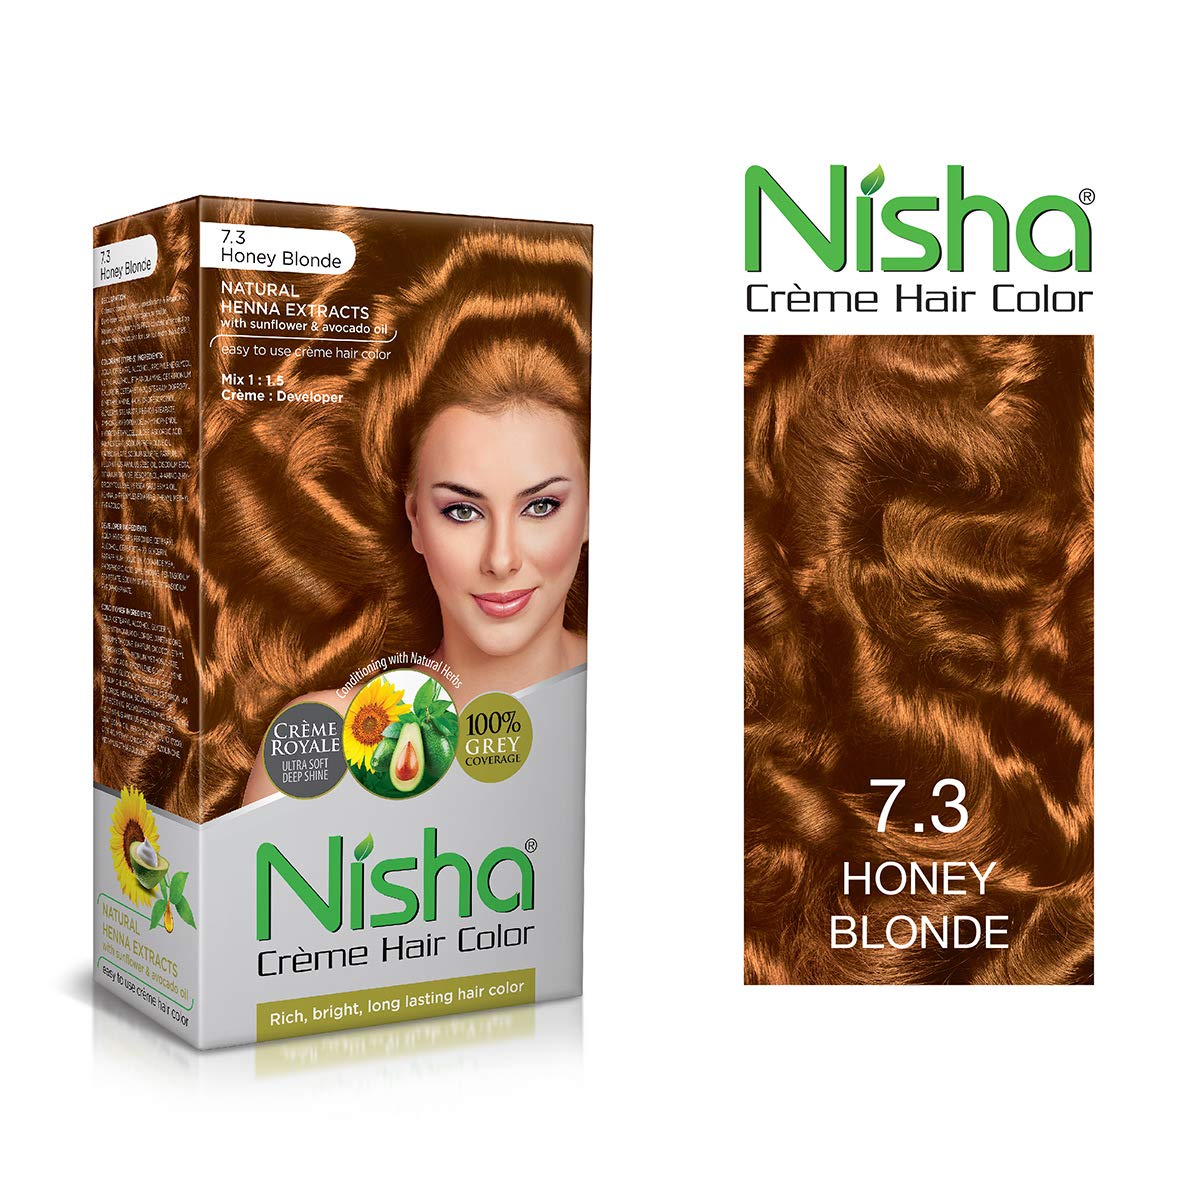 Nisha crème hair colour, Honey blonde-couleur de cheveux riche, lumineuse et durable